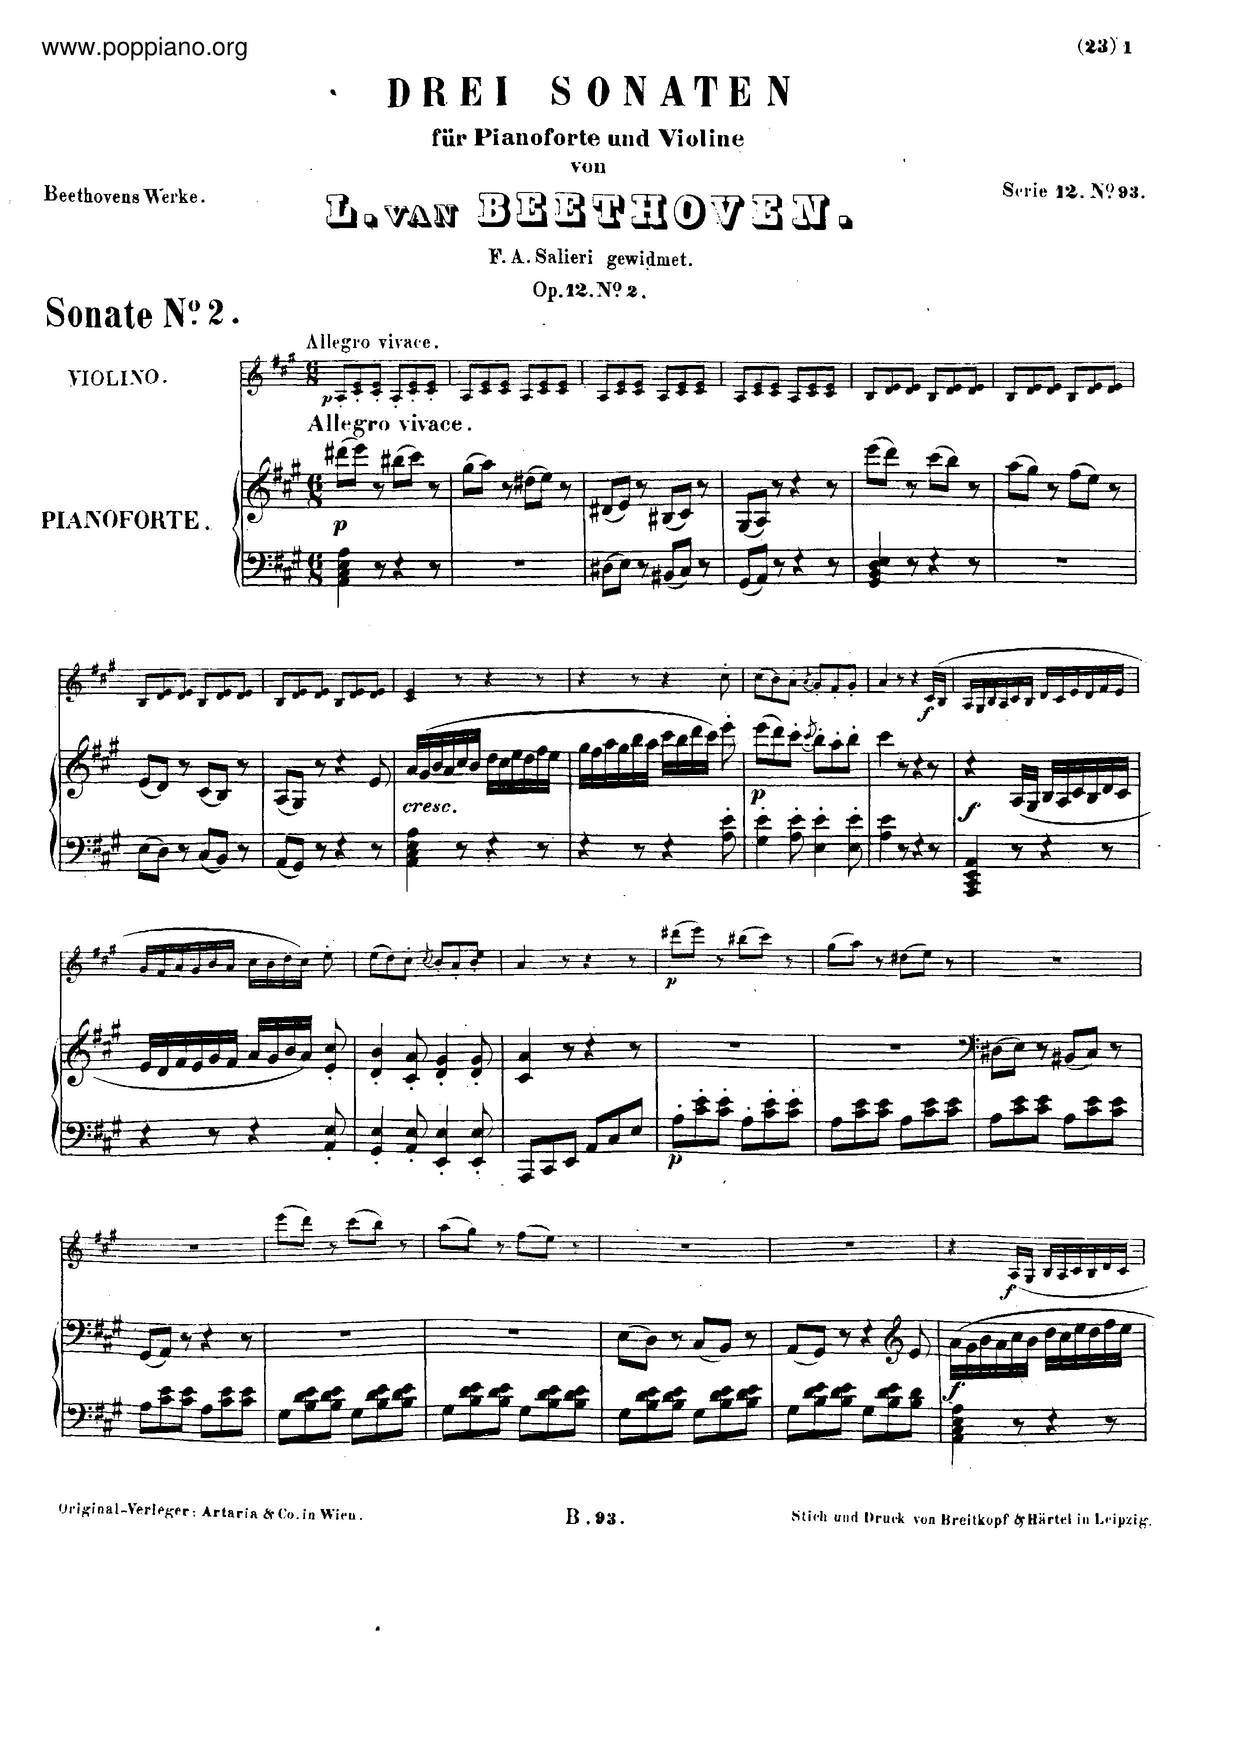 Violin Sonata No. 2, Op. 12 No. 2琴譜